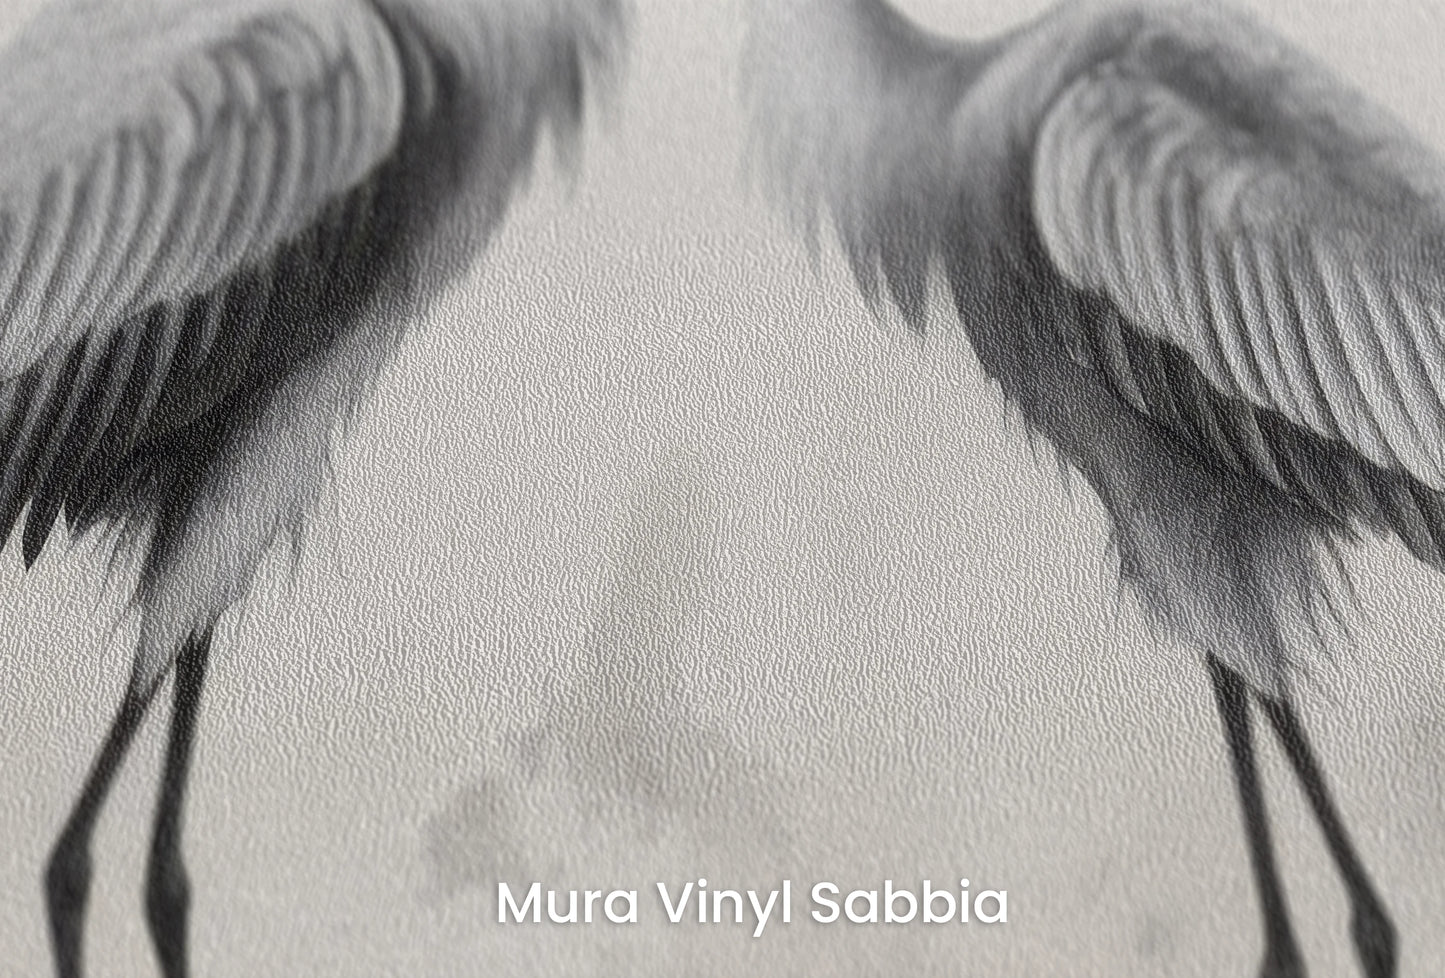 Zbliżenie na artystyczną fototapetę o nazwie Lunar Reflection na podłożu Mura Vinyl Sabbia struktura grubego ziarna piasku.